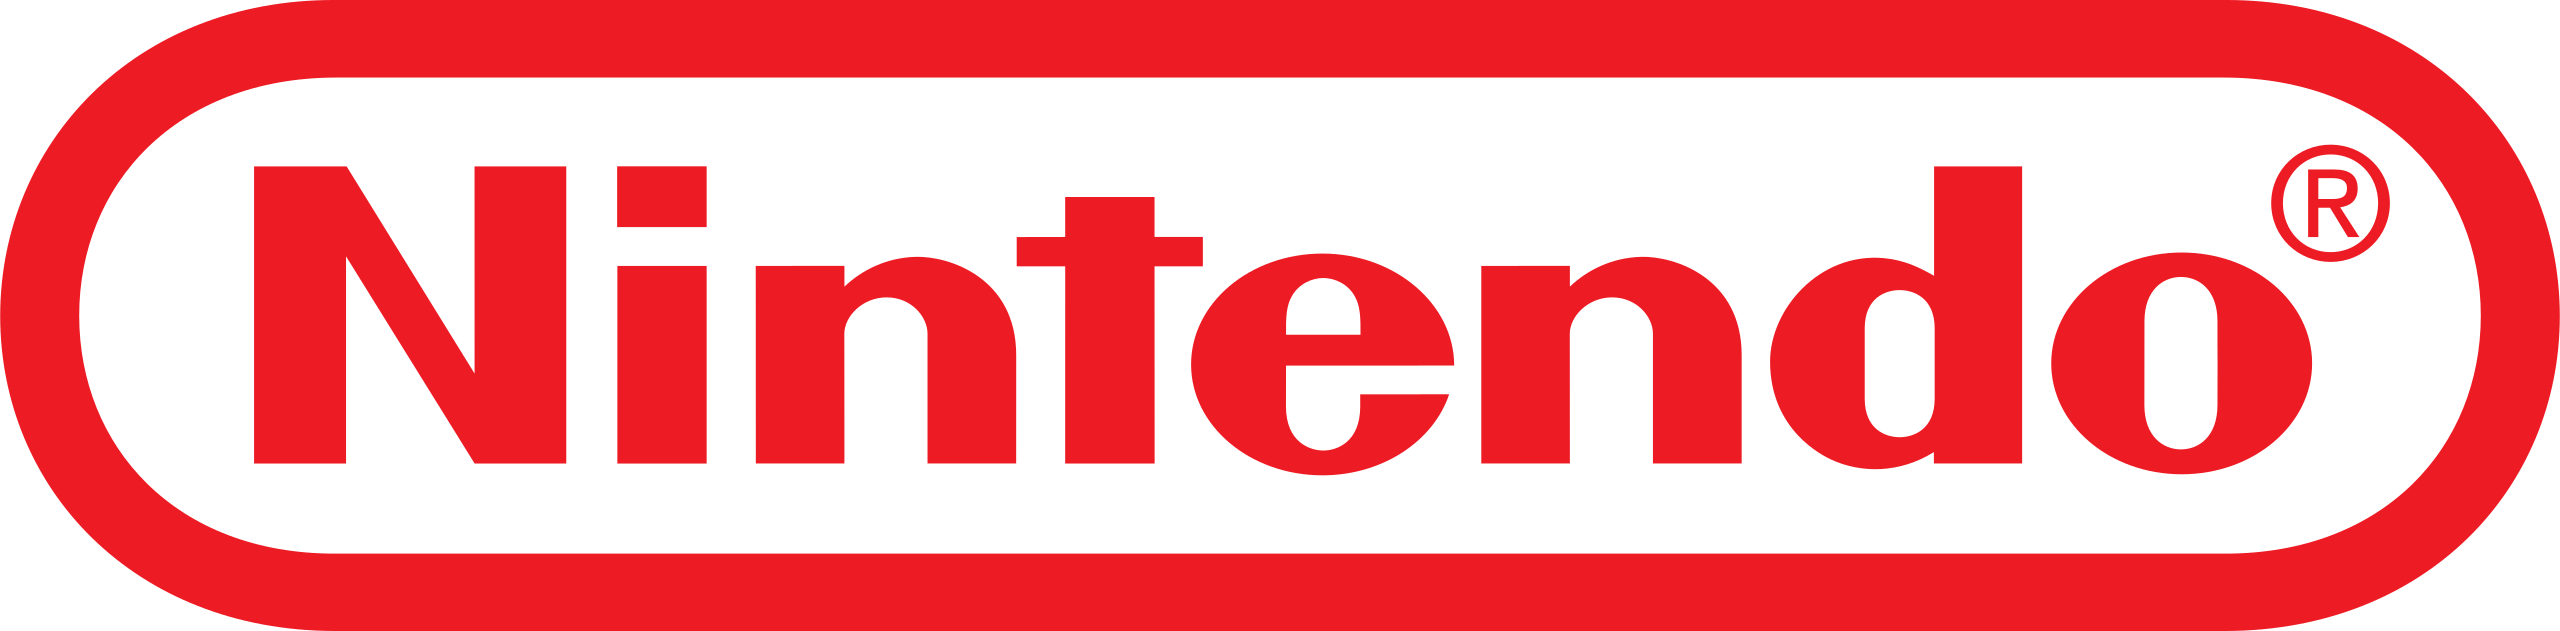 Logo de la marque Nintendo